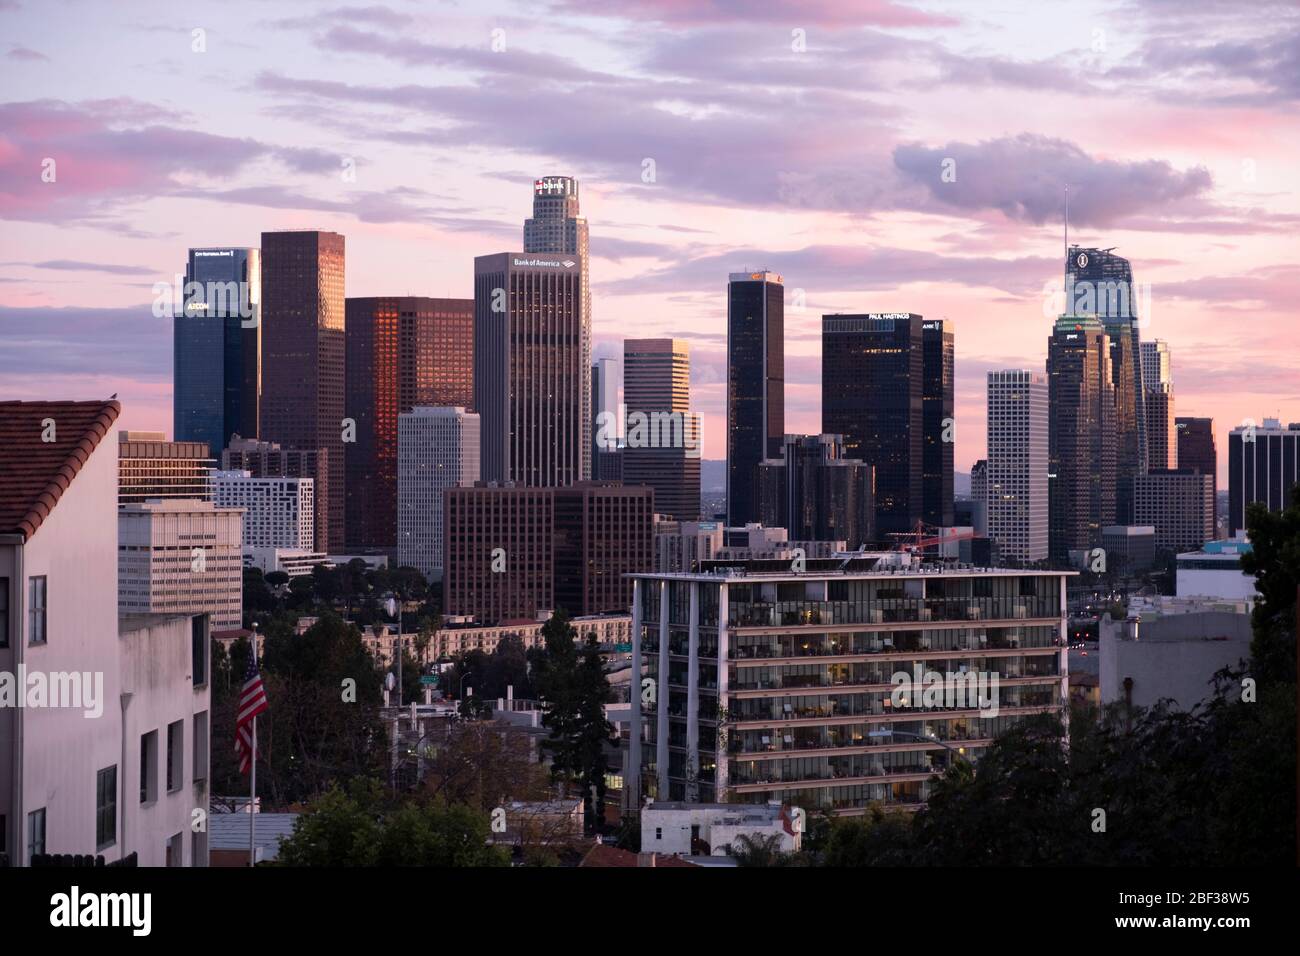 Skyline di Los Angeles al tramonto con nuvole rosa e dorate colorate nel cielo, visto dal quartiere di Angelino Heights Foto Stock